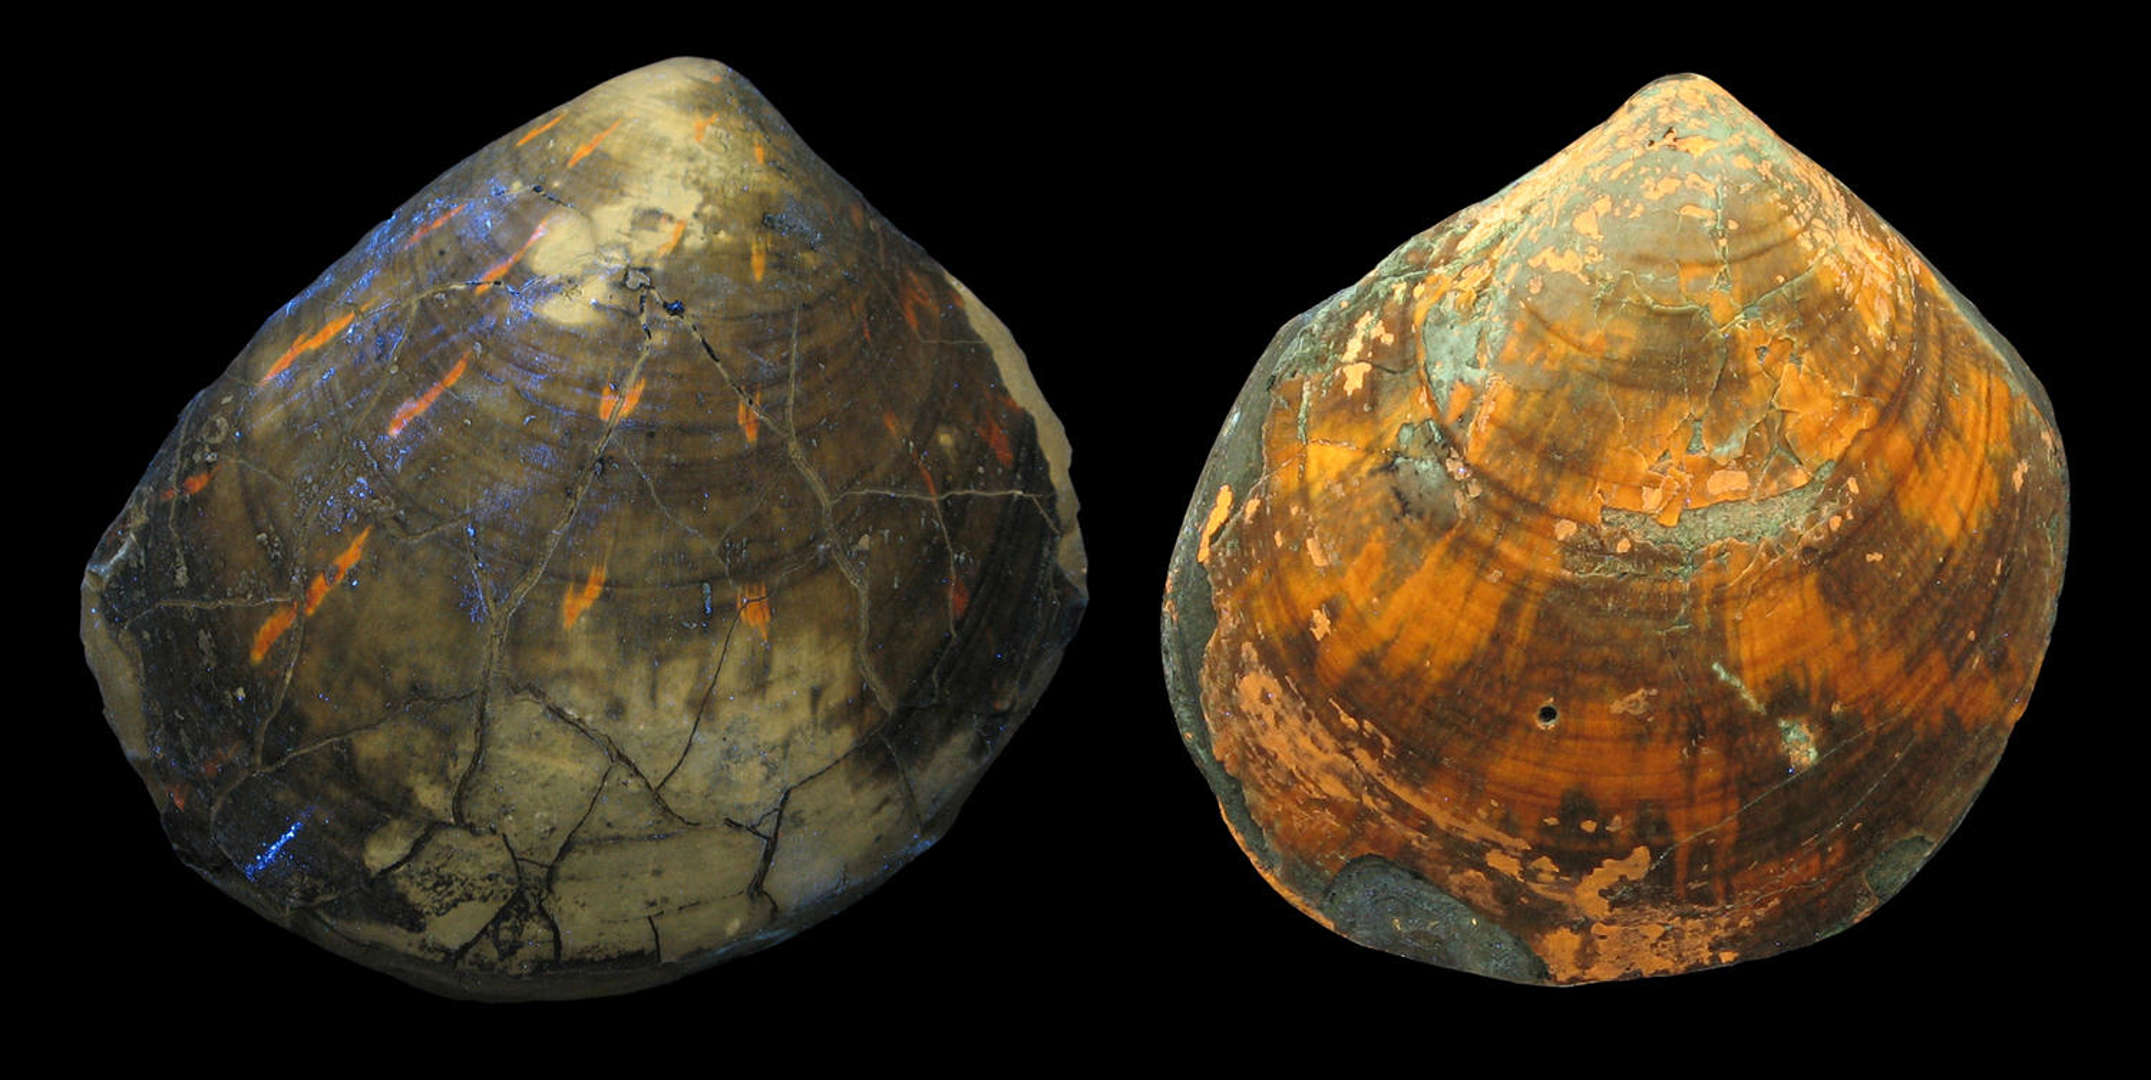 哥廷根大学古生物学家在2.4亿年前的贝壳化石中发现多样性图案